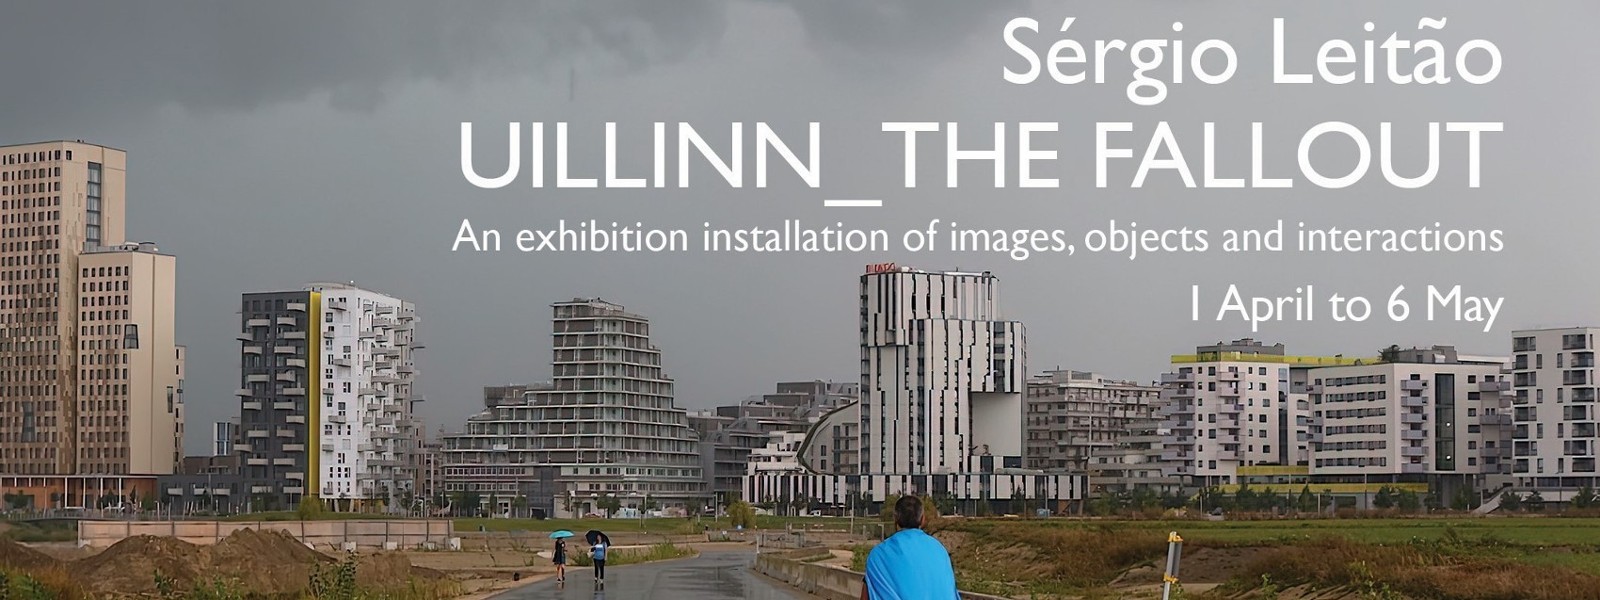 UILLINN_THE FALLOUT an exhibition by Sérgio Leitão